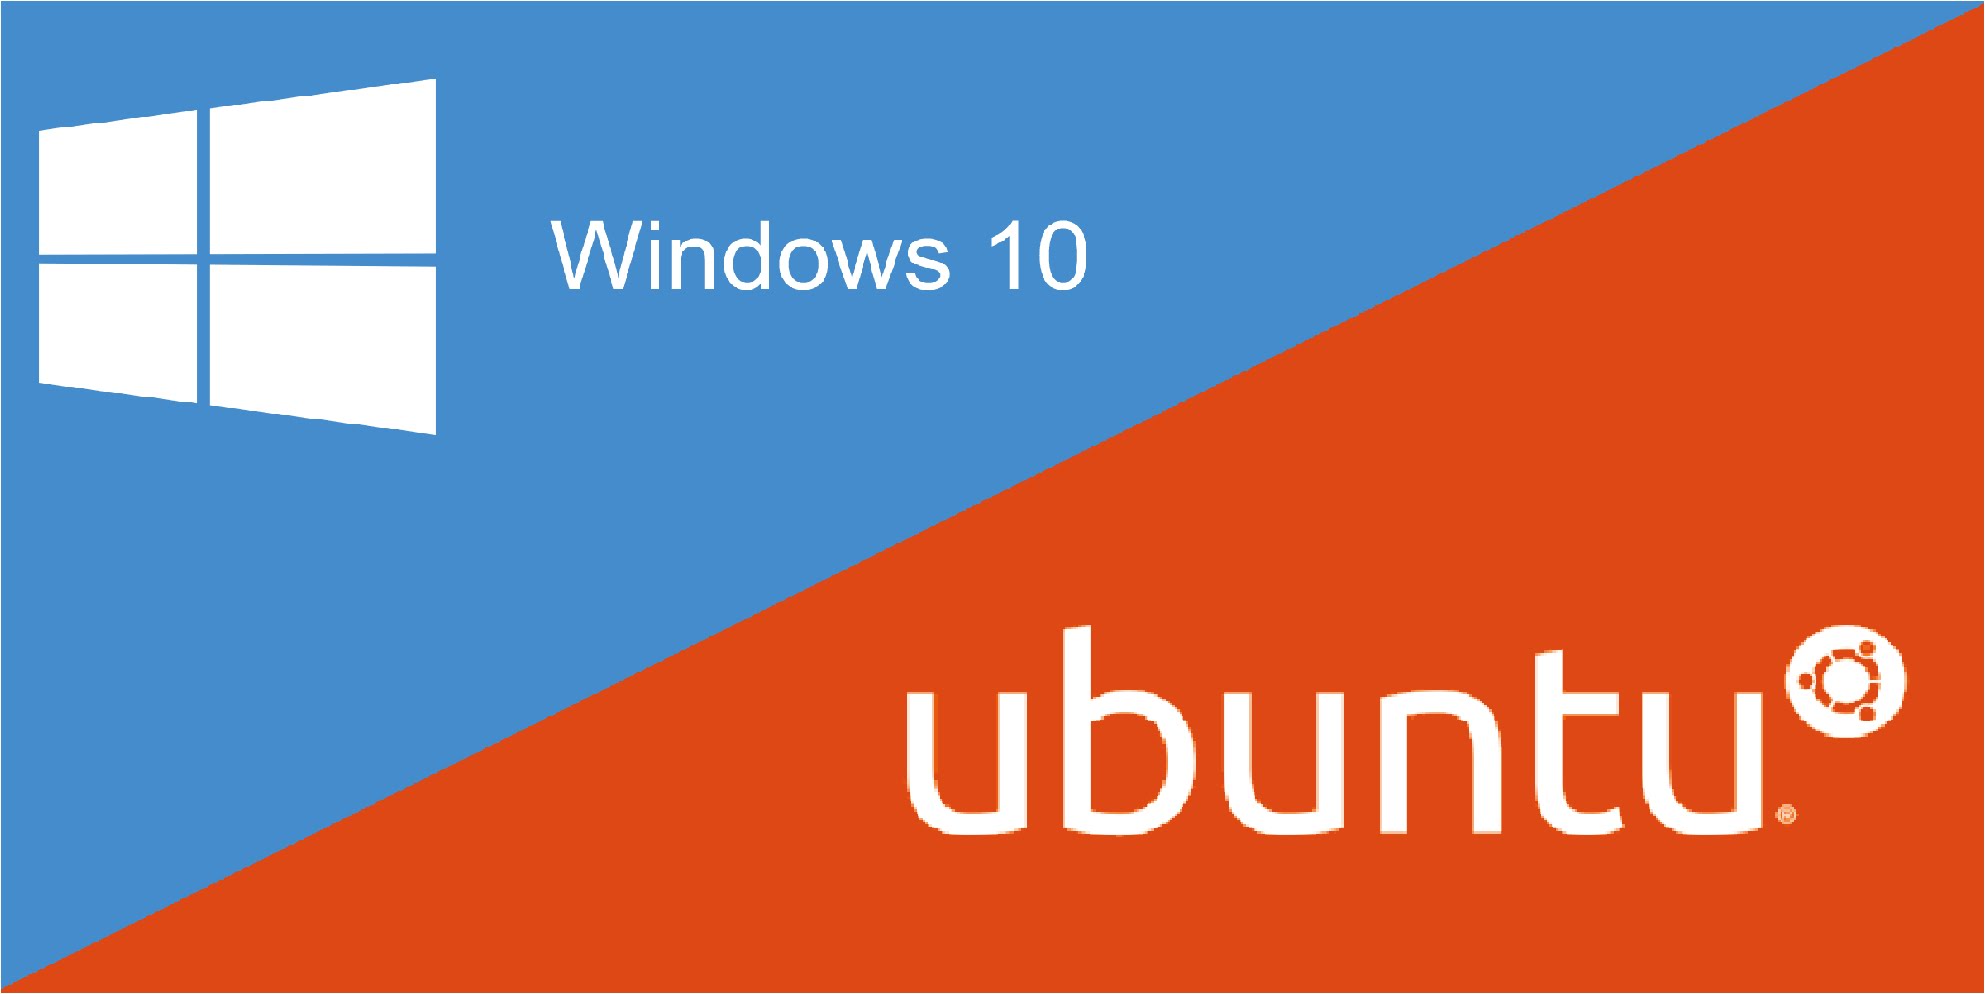 Γιατί το Ubuntu στο Windows 10 της Microsoft; - Φωτογραφία 1